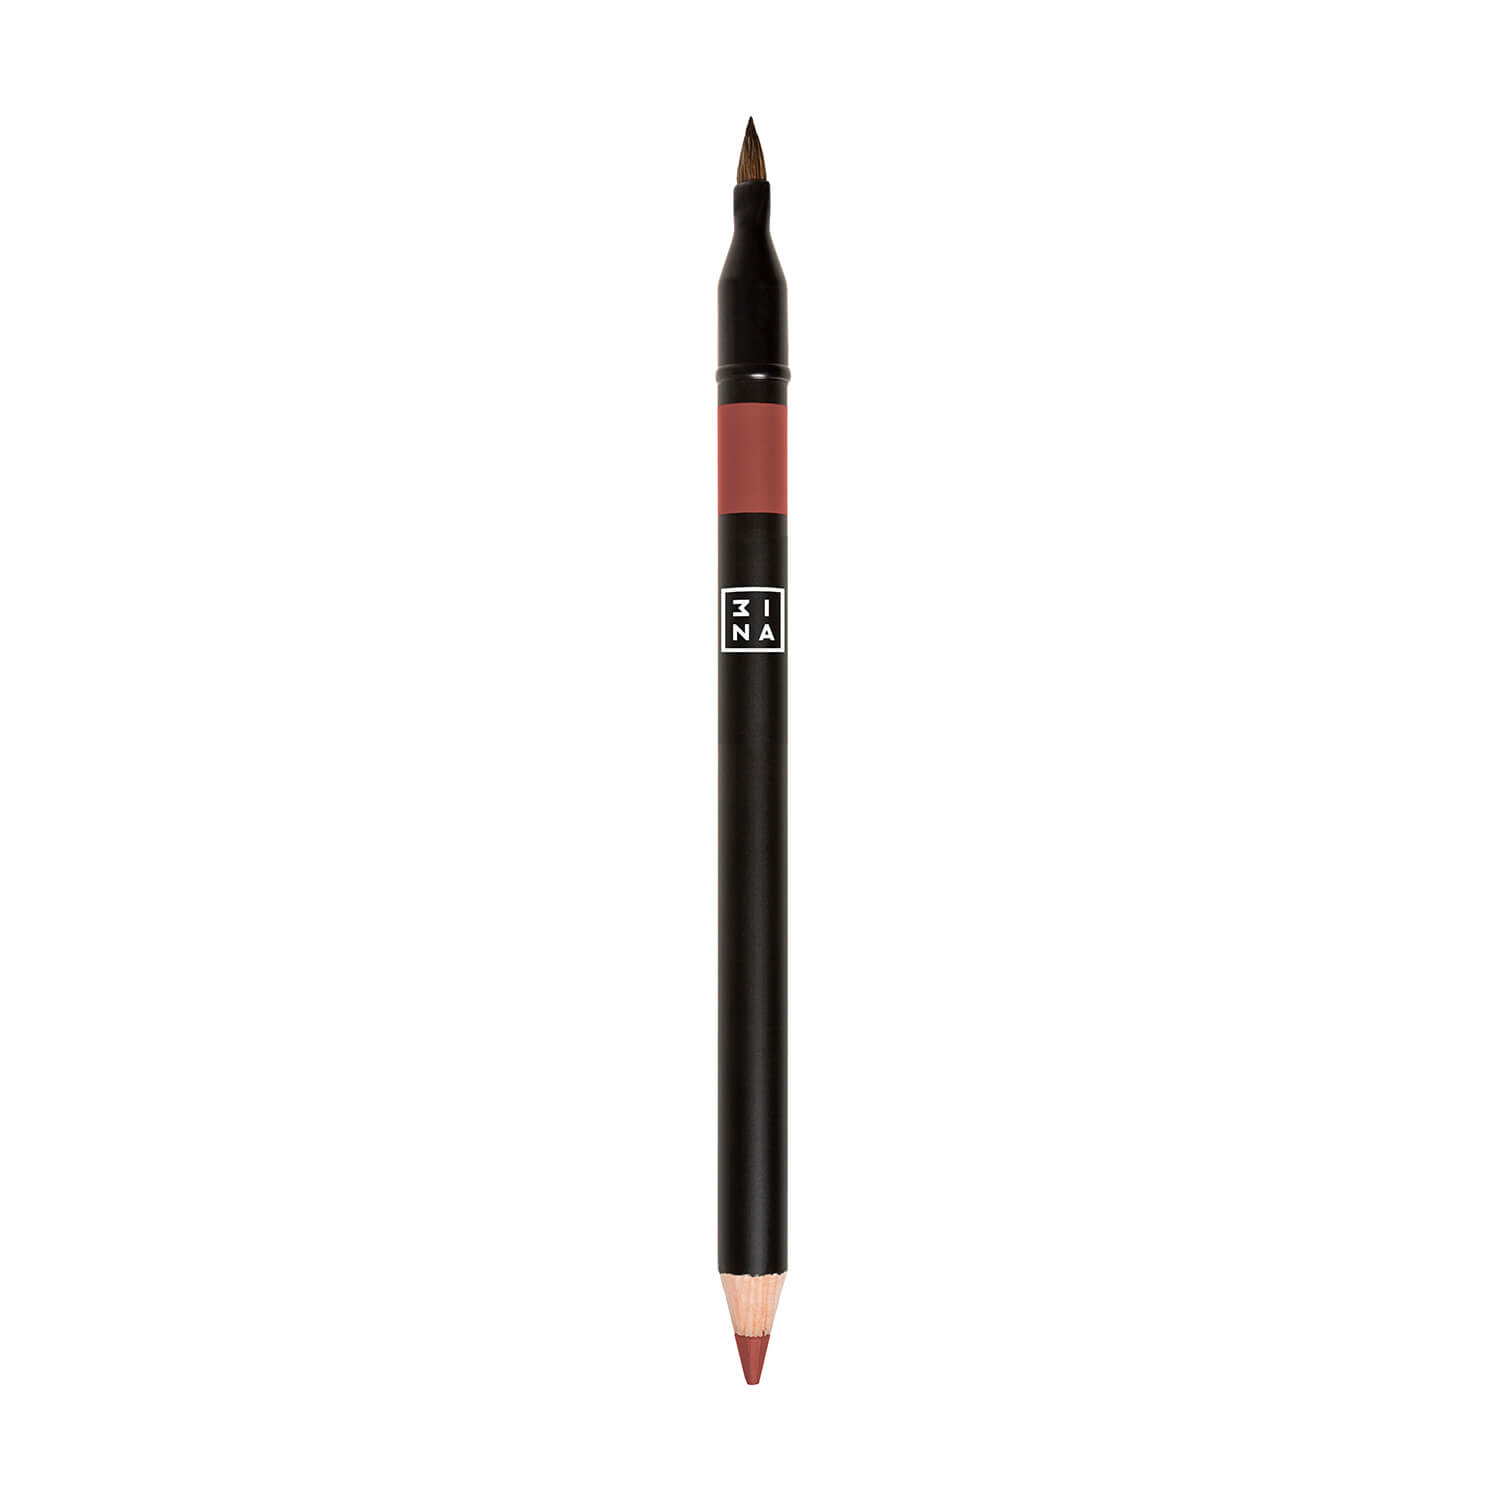 the lip pencil with brush (lápiz delineador de labios con brocha)